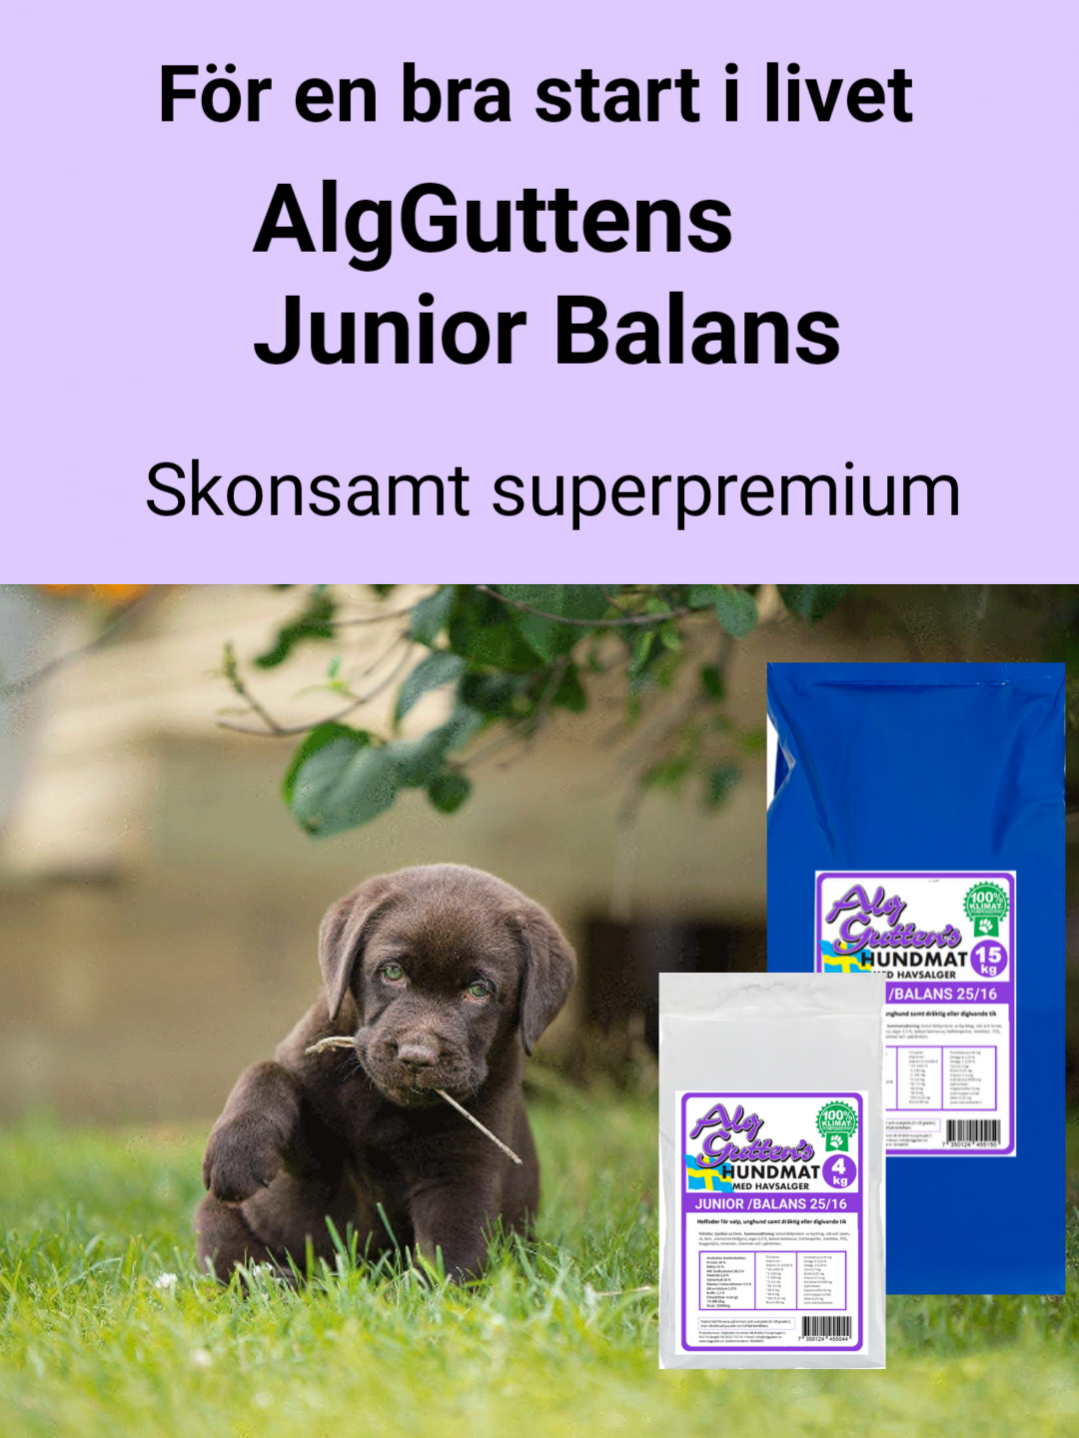 AlgGutten junior balans Svensktillverkat hundfoder med havsalger